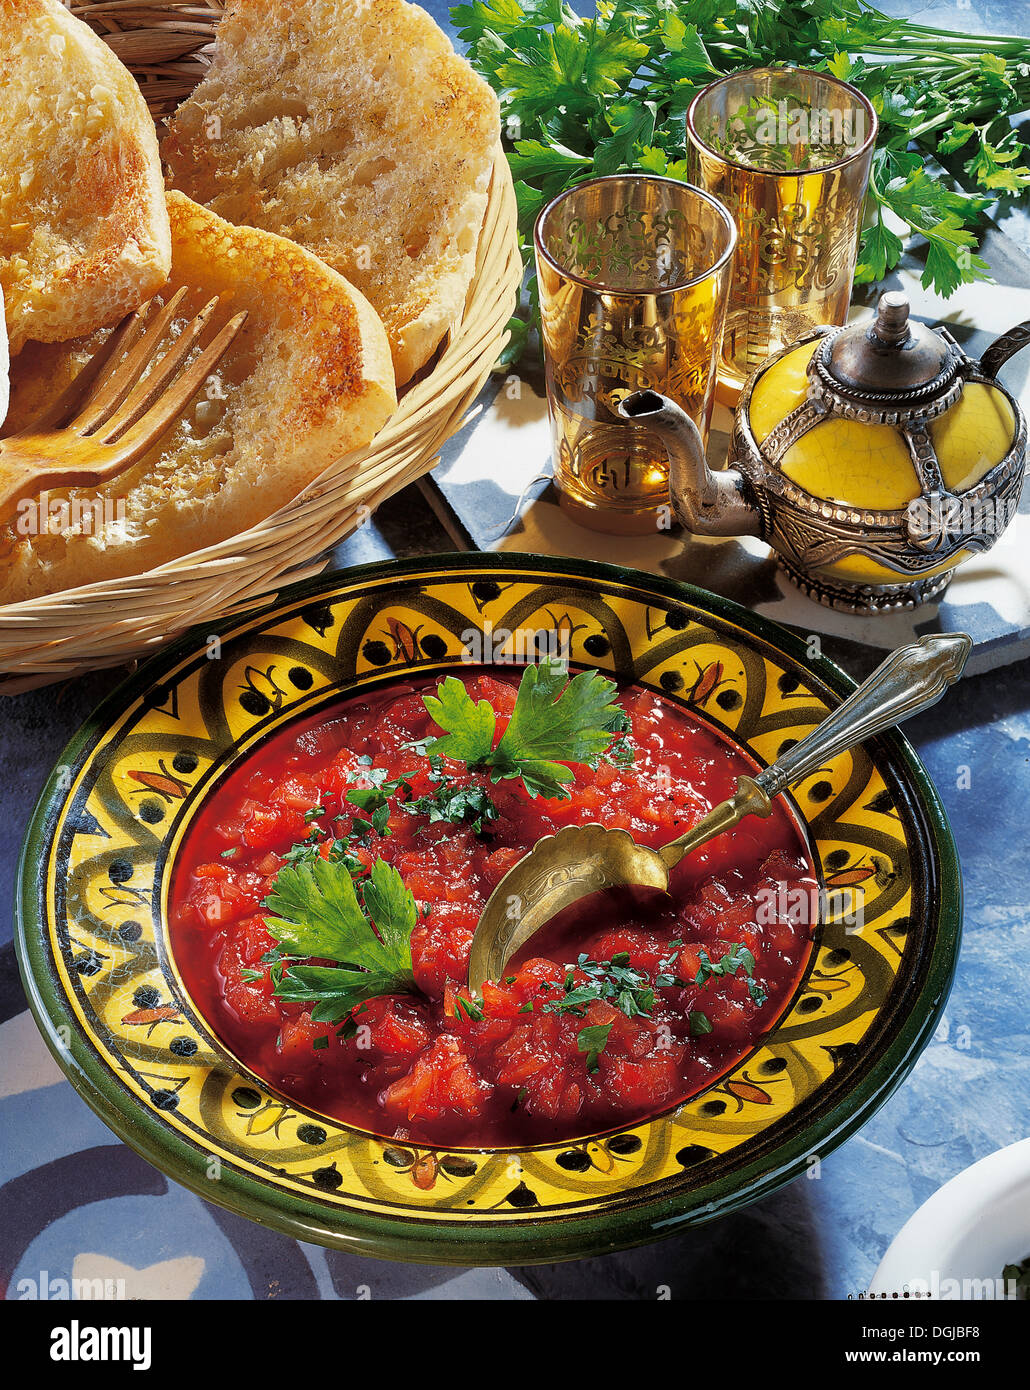 Tomato relish, Egypt. Stock Photo